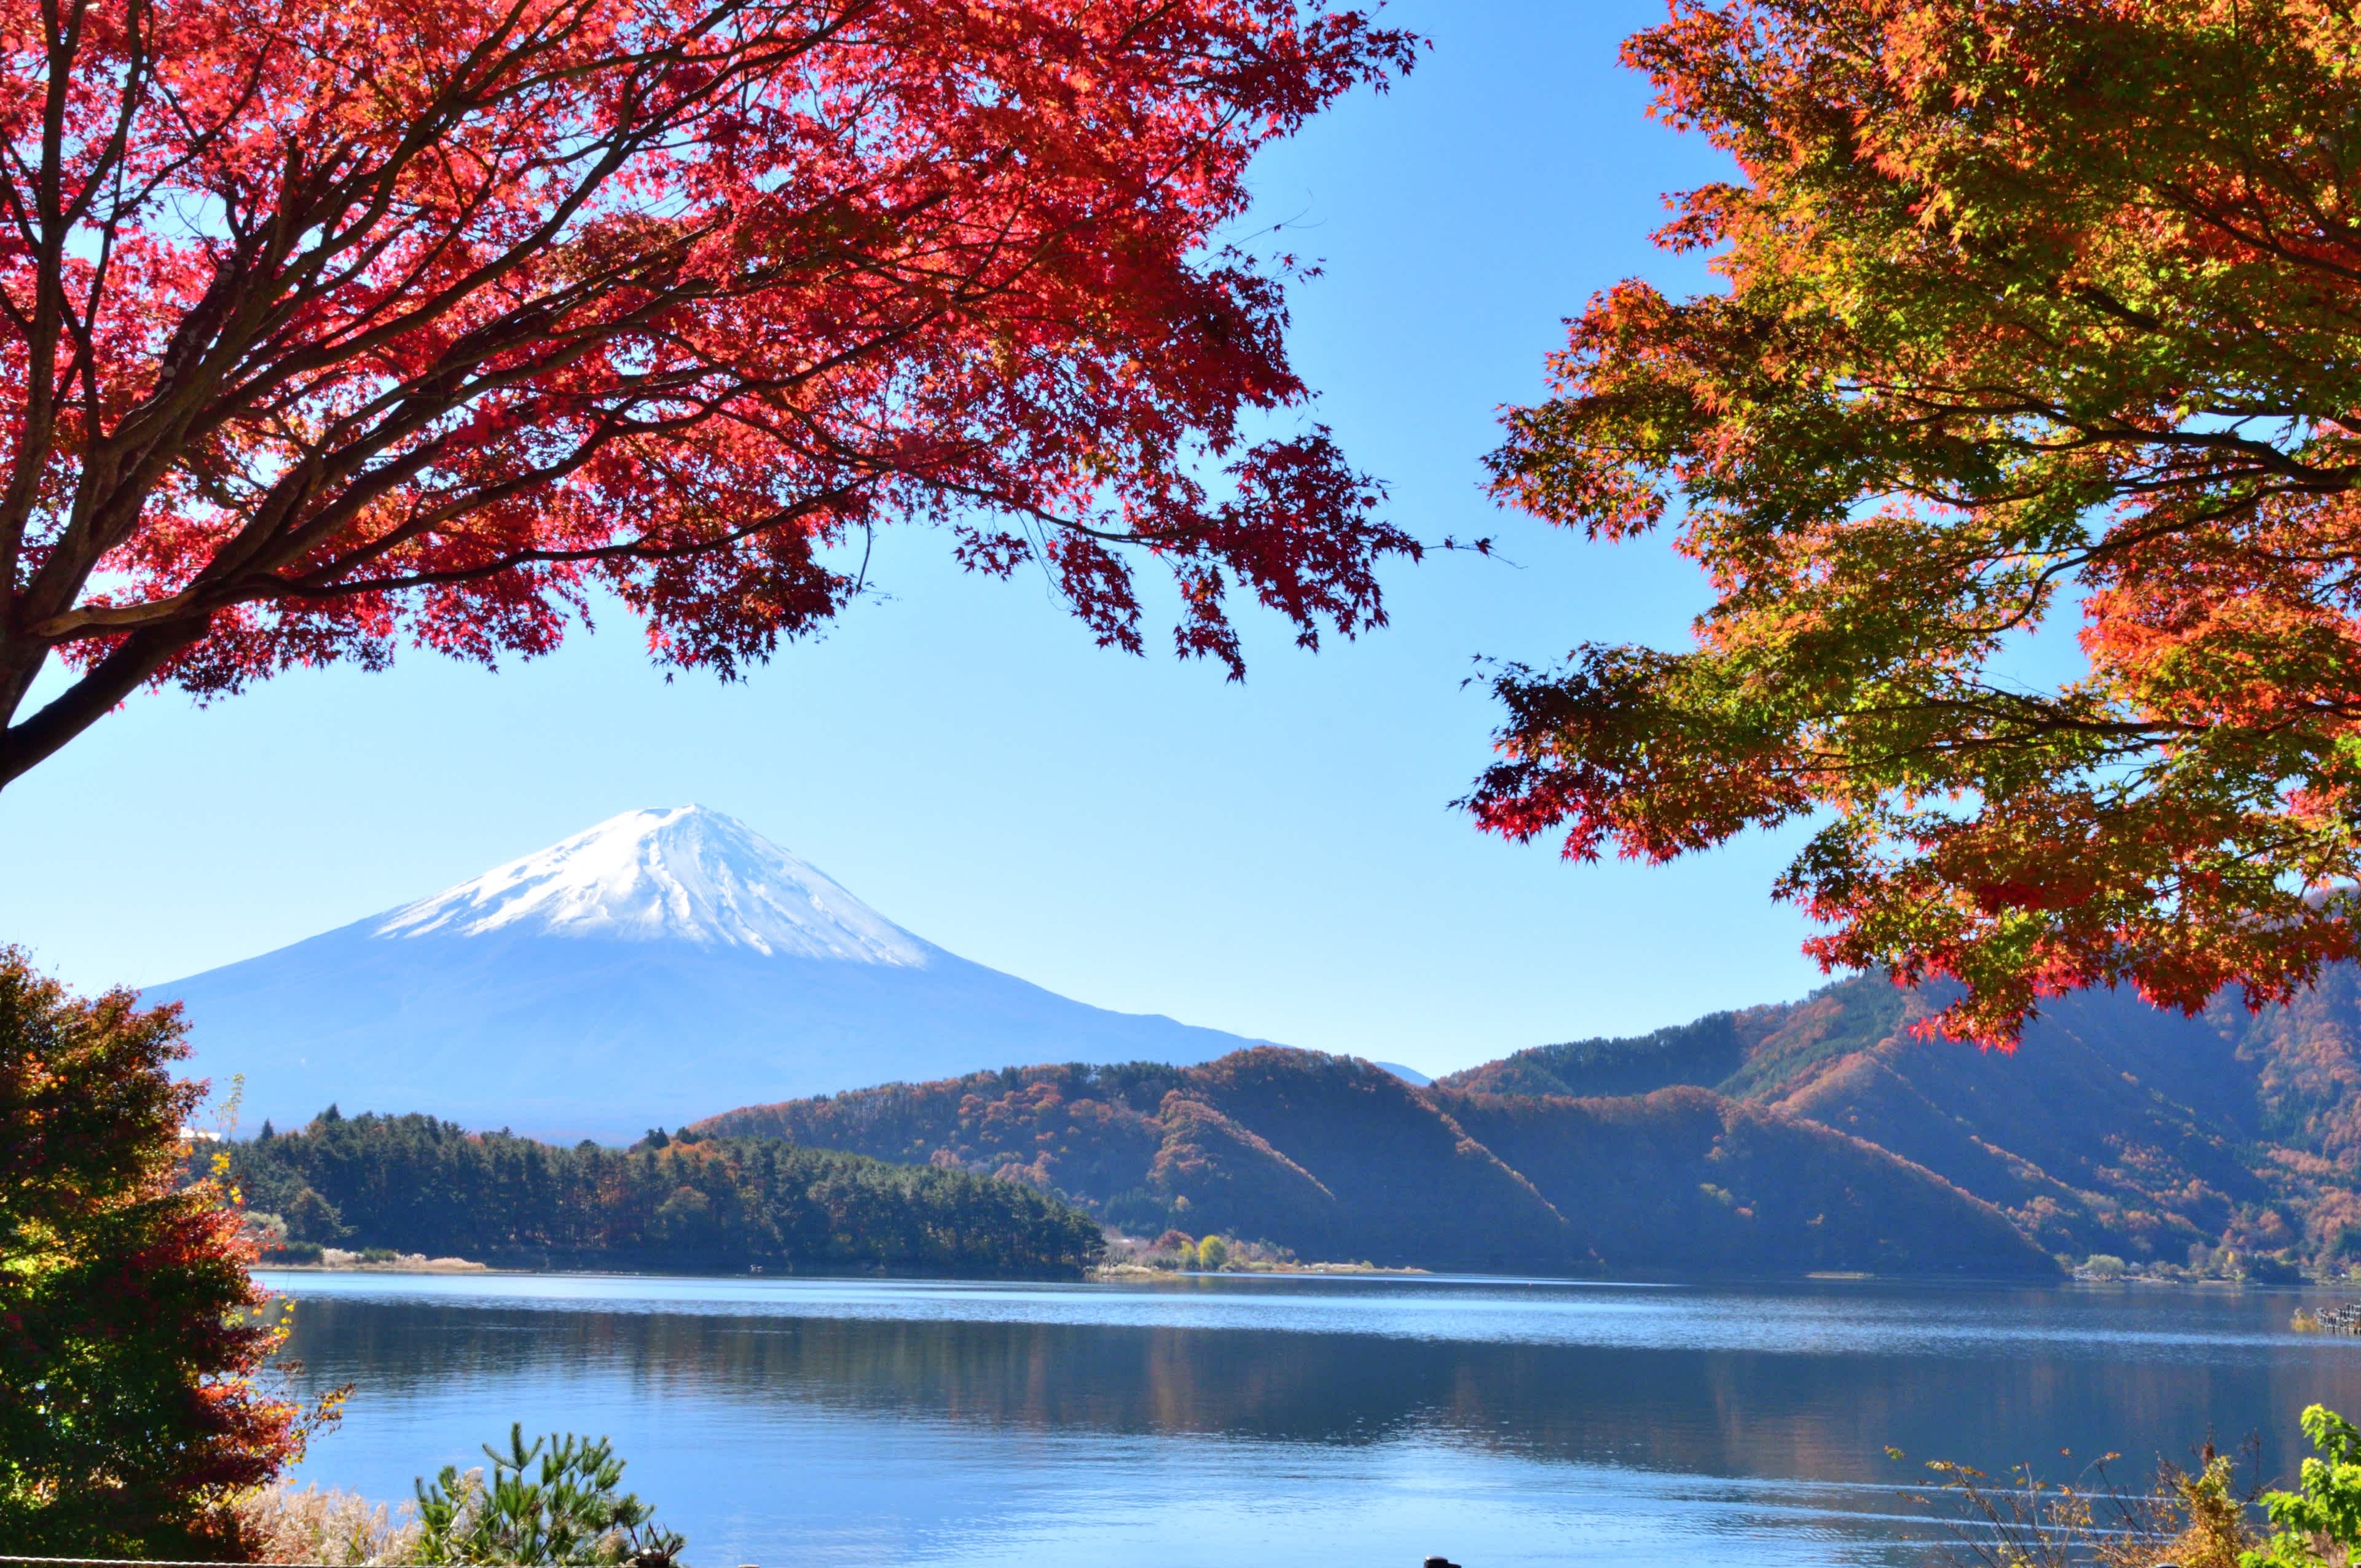 Der Kawaguchi-See ist berühmt für seinen Blick auf den Fuji und das wunderschöne Herbstlaub im November. Hier sind Fotos, die rund um den Kawaguchi-See, einen der Fuji Five Lakes, aufgenommen wurden. Der Kawaguchi-See ist Teil des Fuji-Hakone-Izu-Nationalparks. Der Berg Fuji ist zum UNESCO-Weltkulturerbe erklärt.